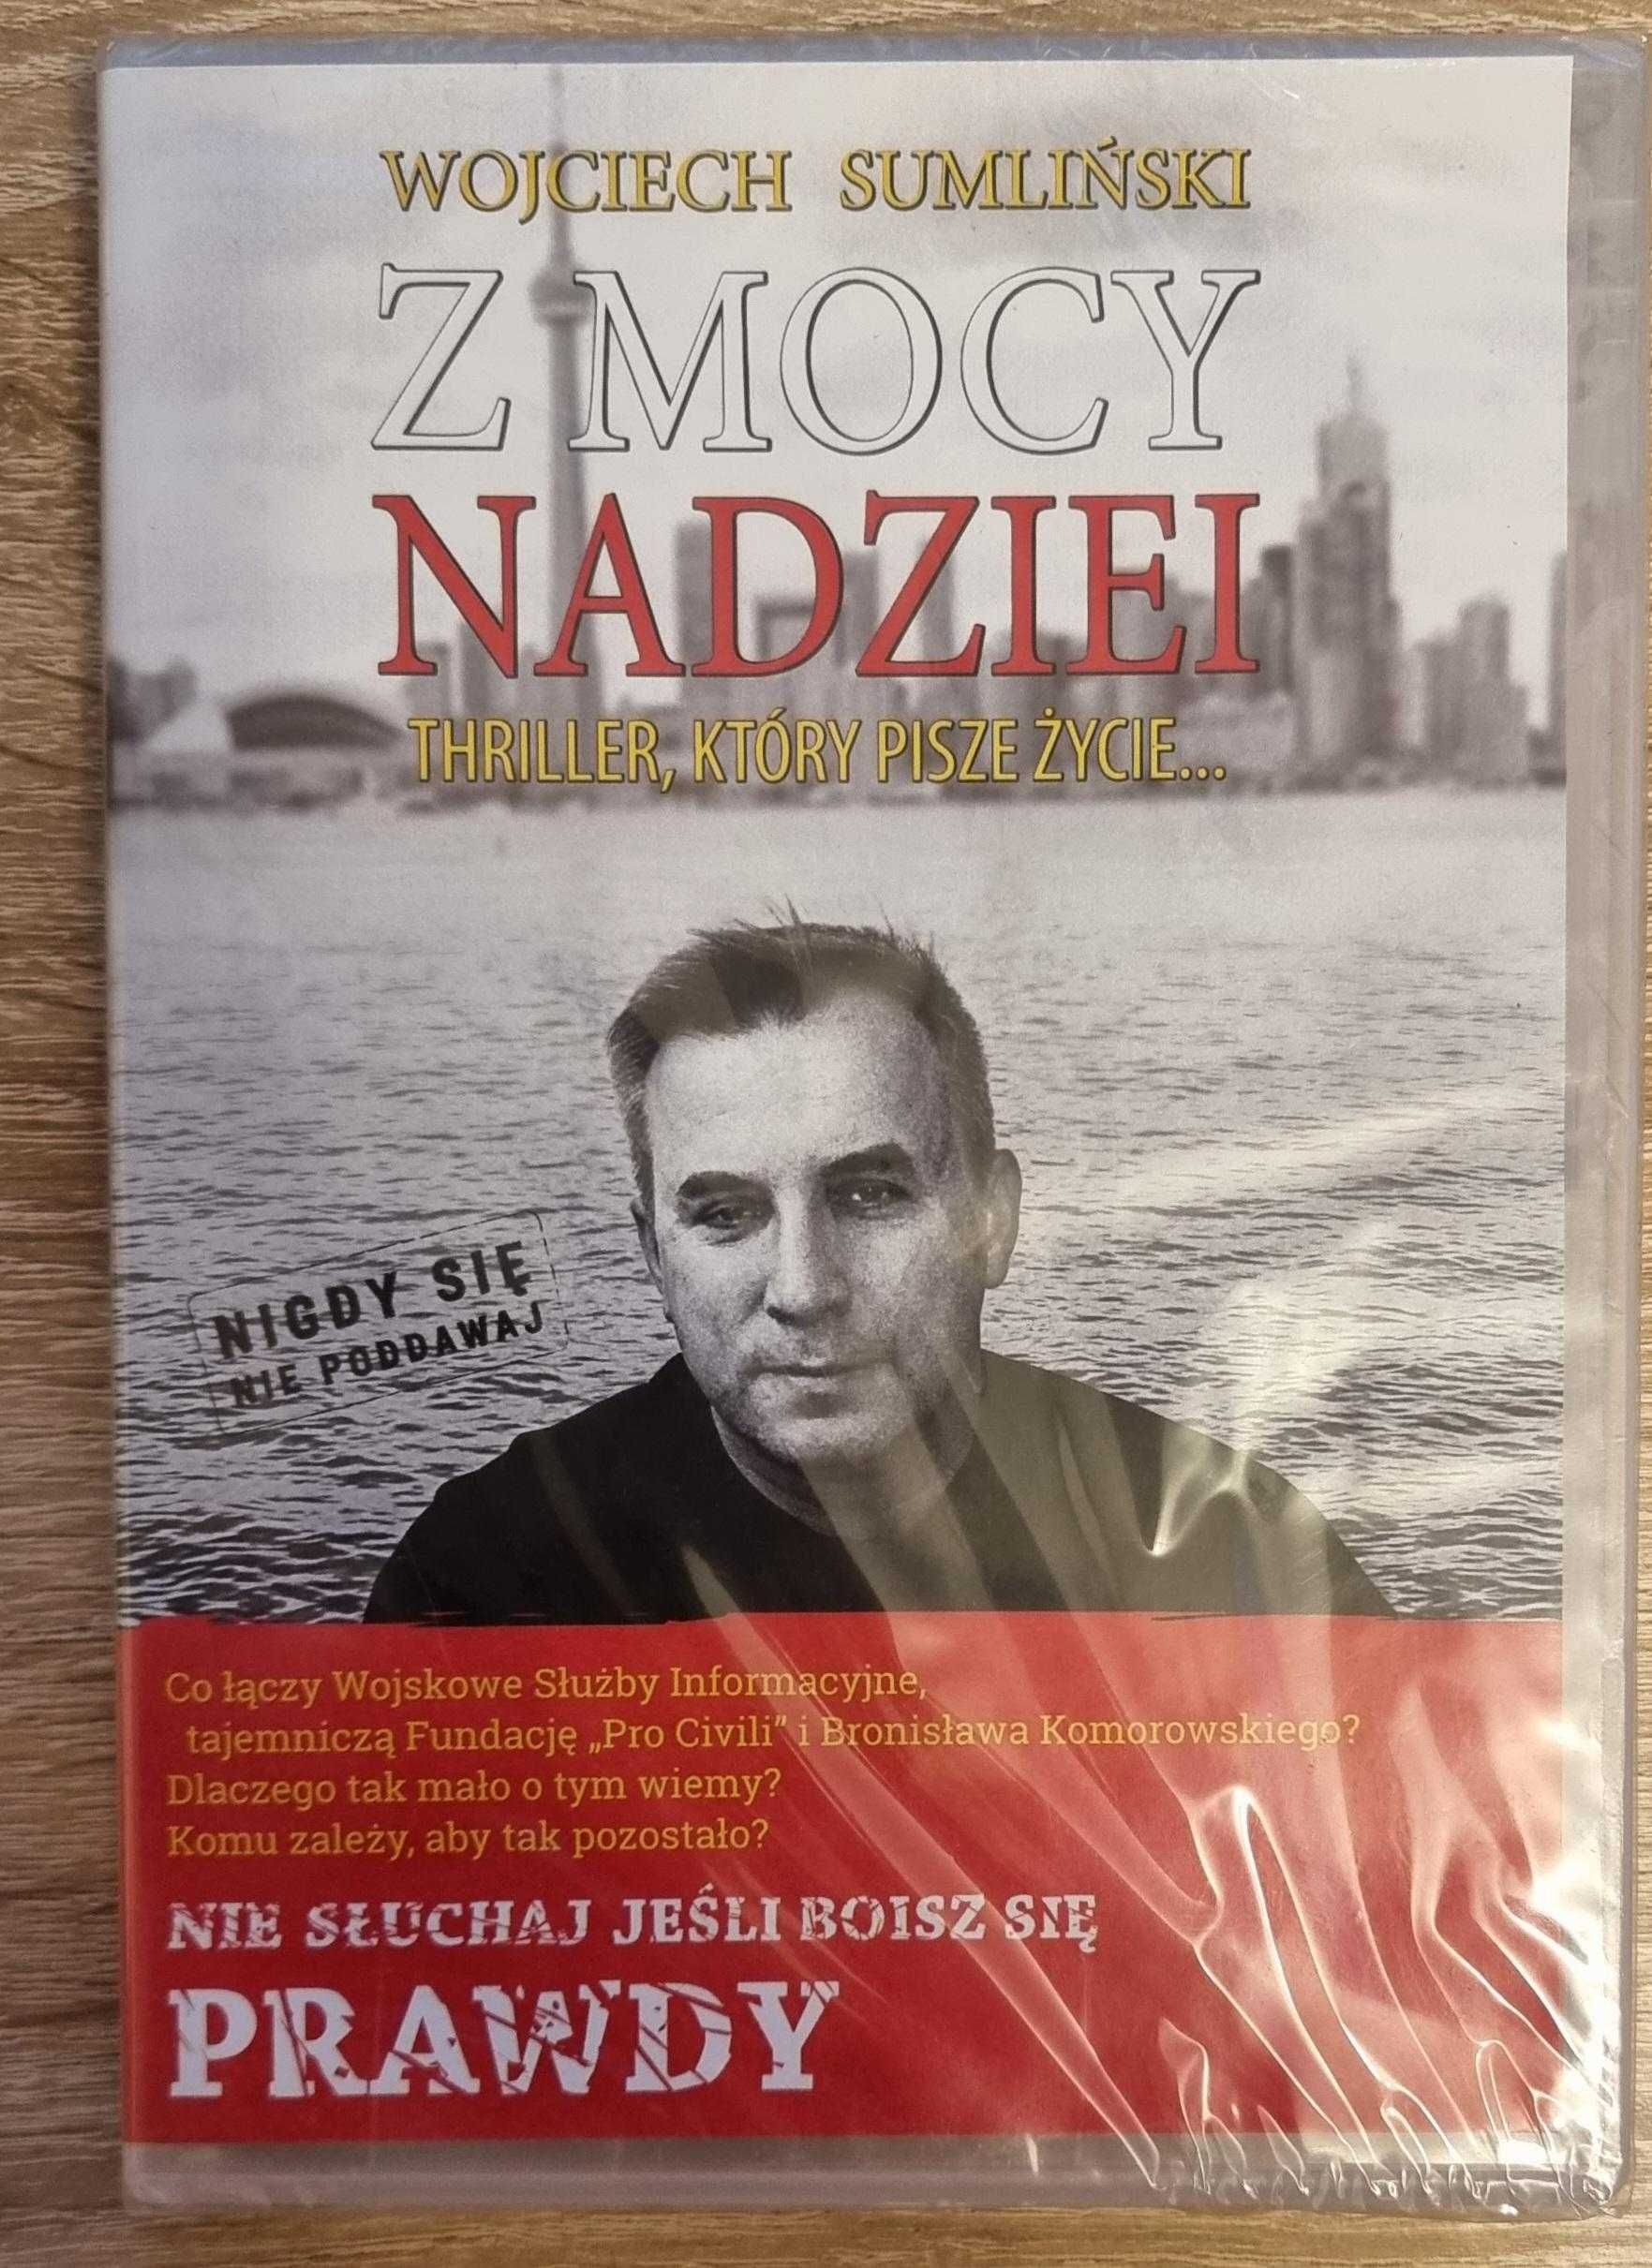 Wojciech Sumliński audiobook